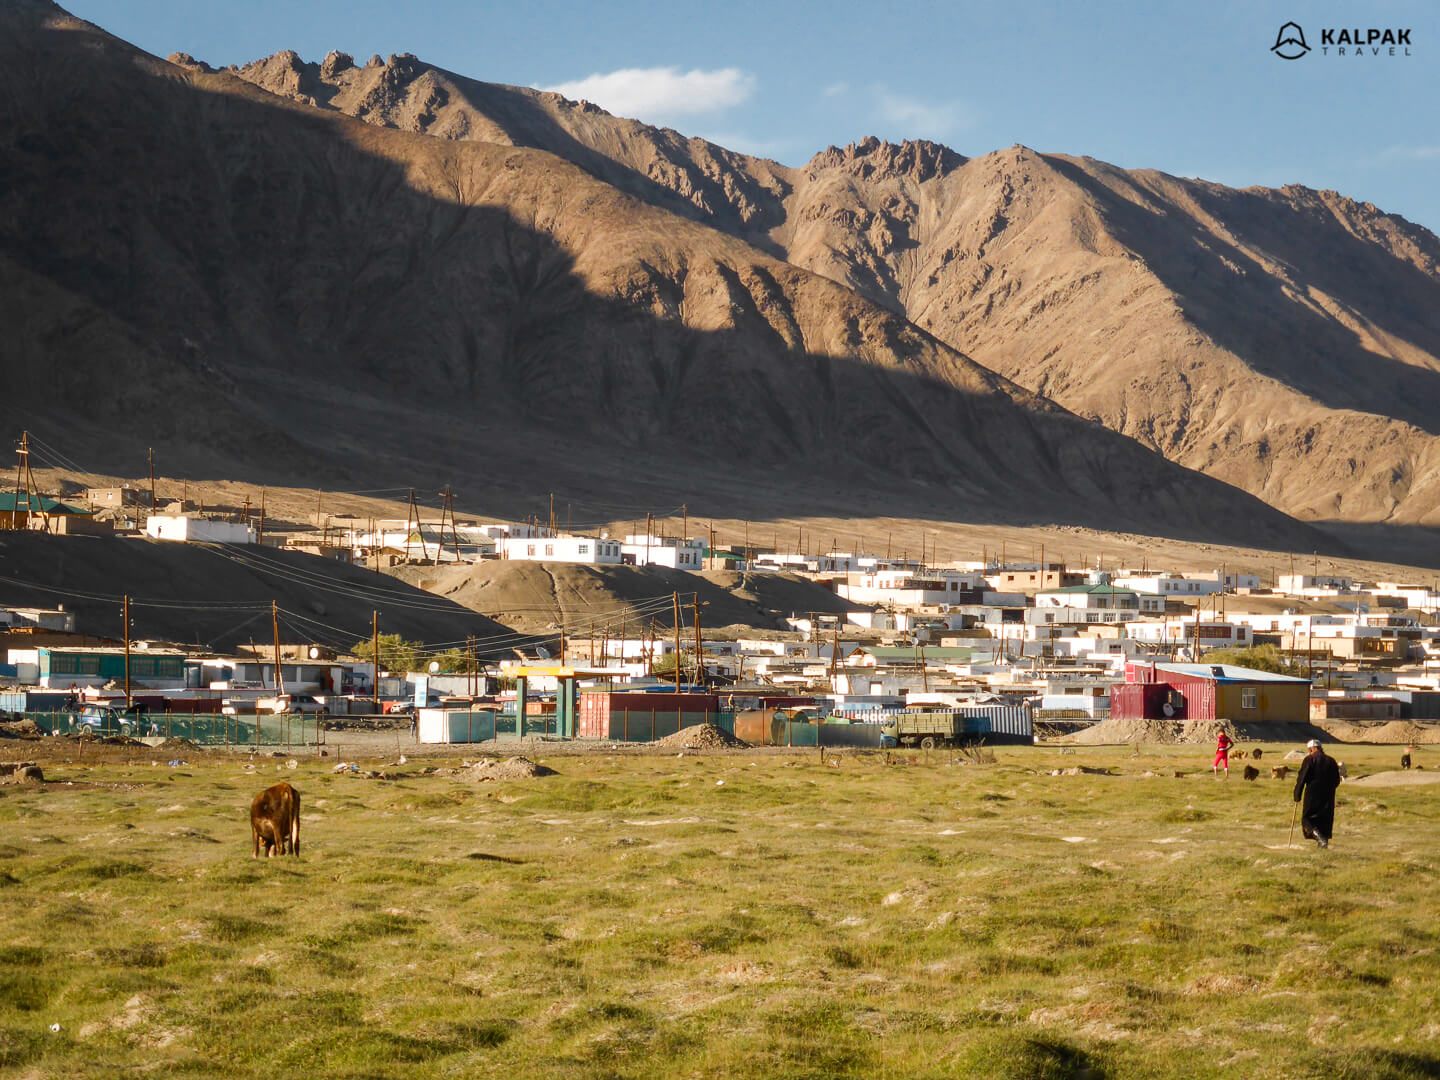 Murghab Kyrgyz minority city in Tajikistan